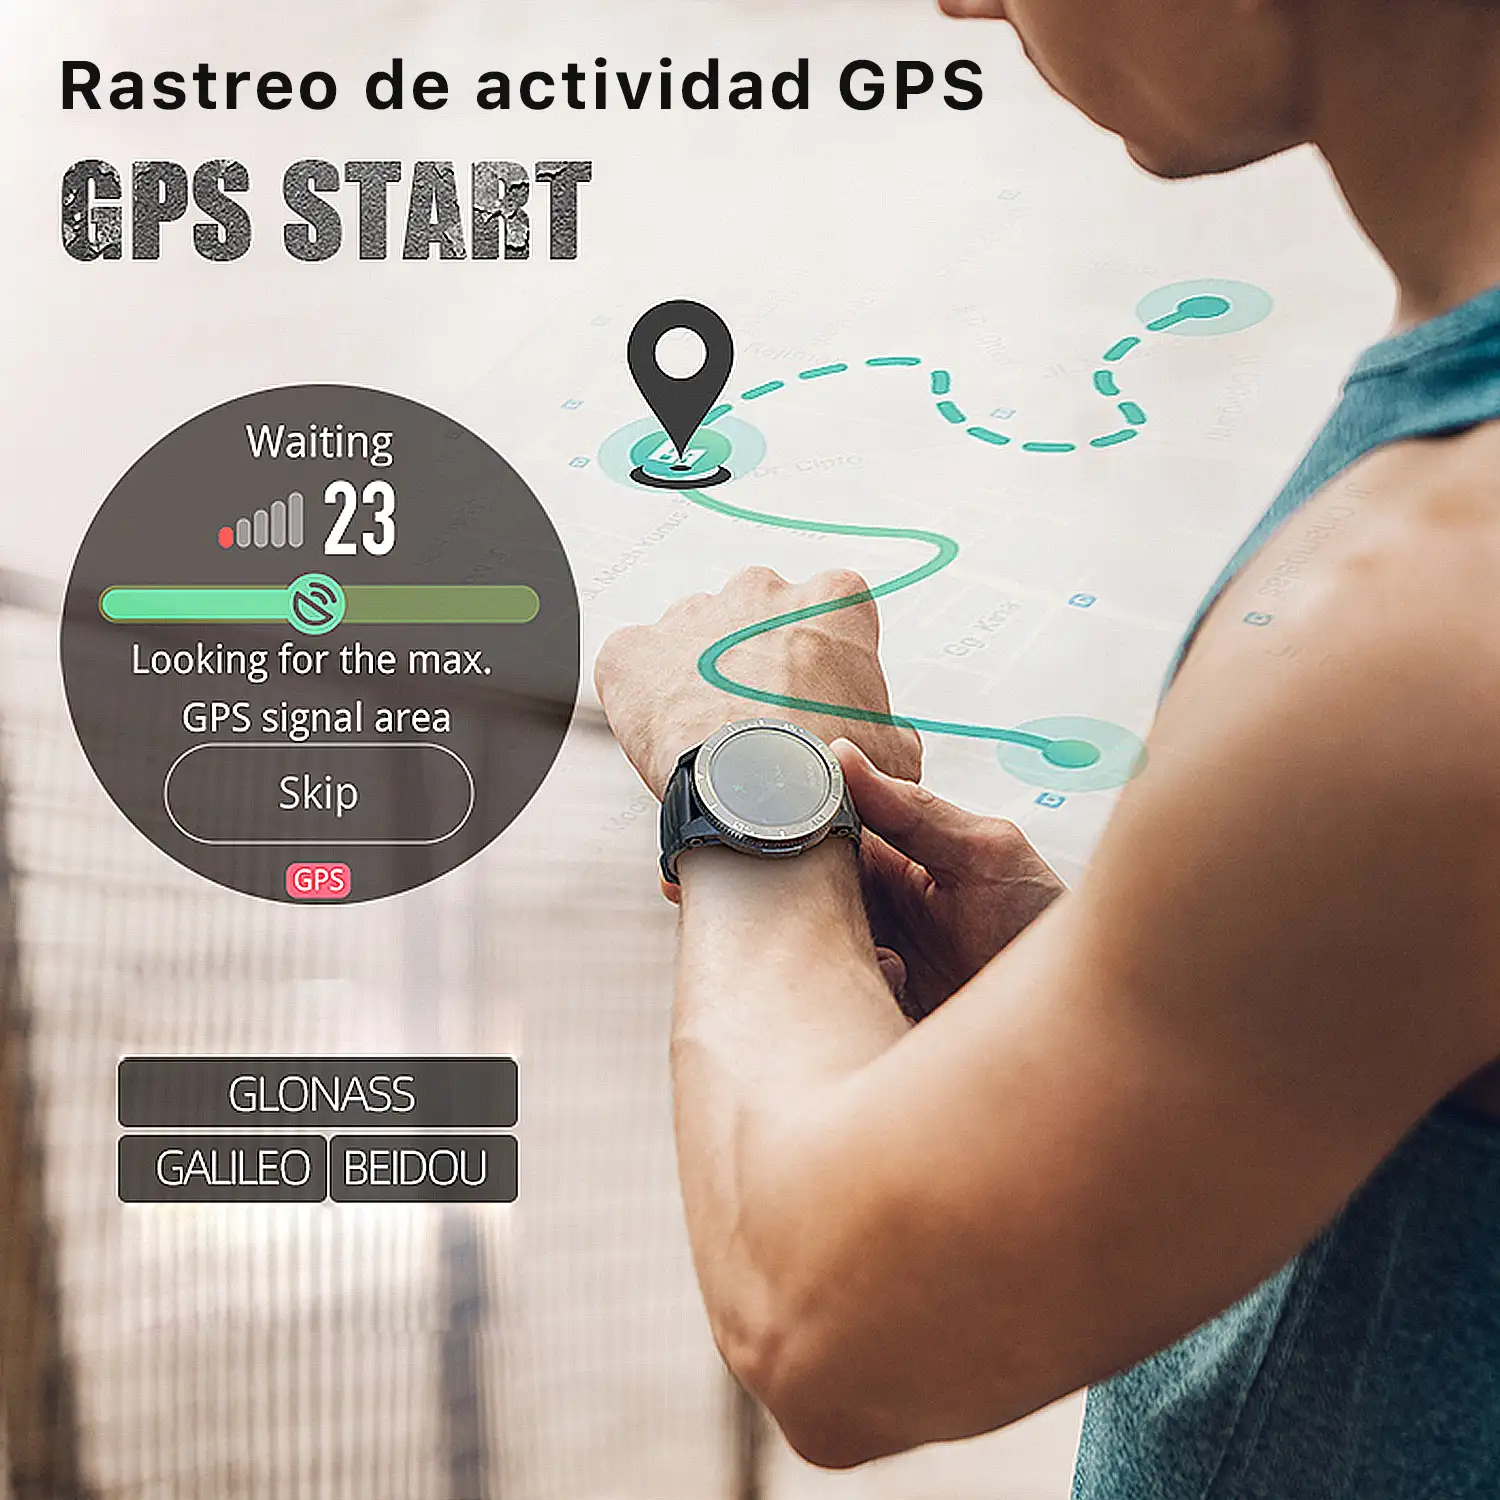 Smartwatch XTREK con GPS, monitor cardiaco y O2 en sangre. Batería de 580mAh. Varios modos deportivos, notificaciones de apps.